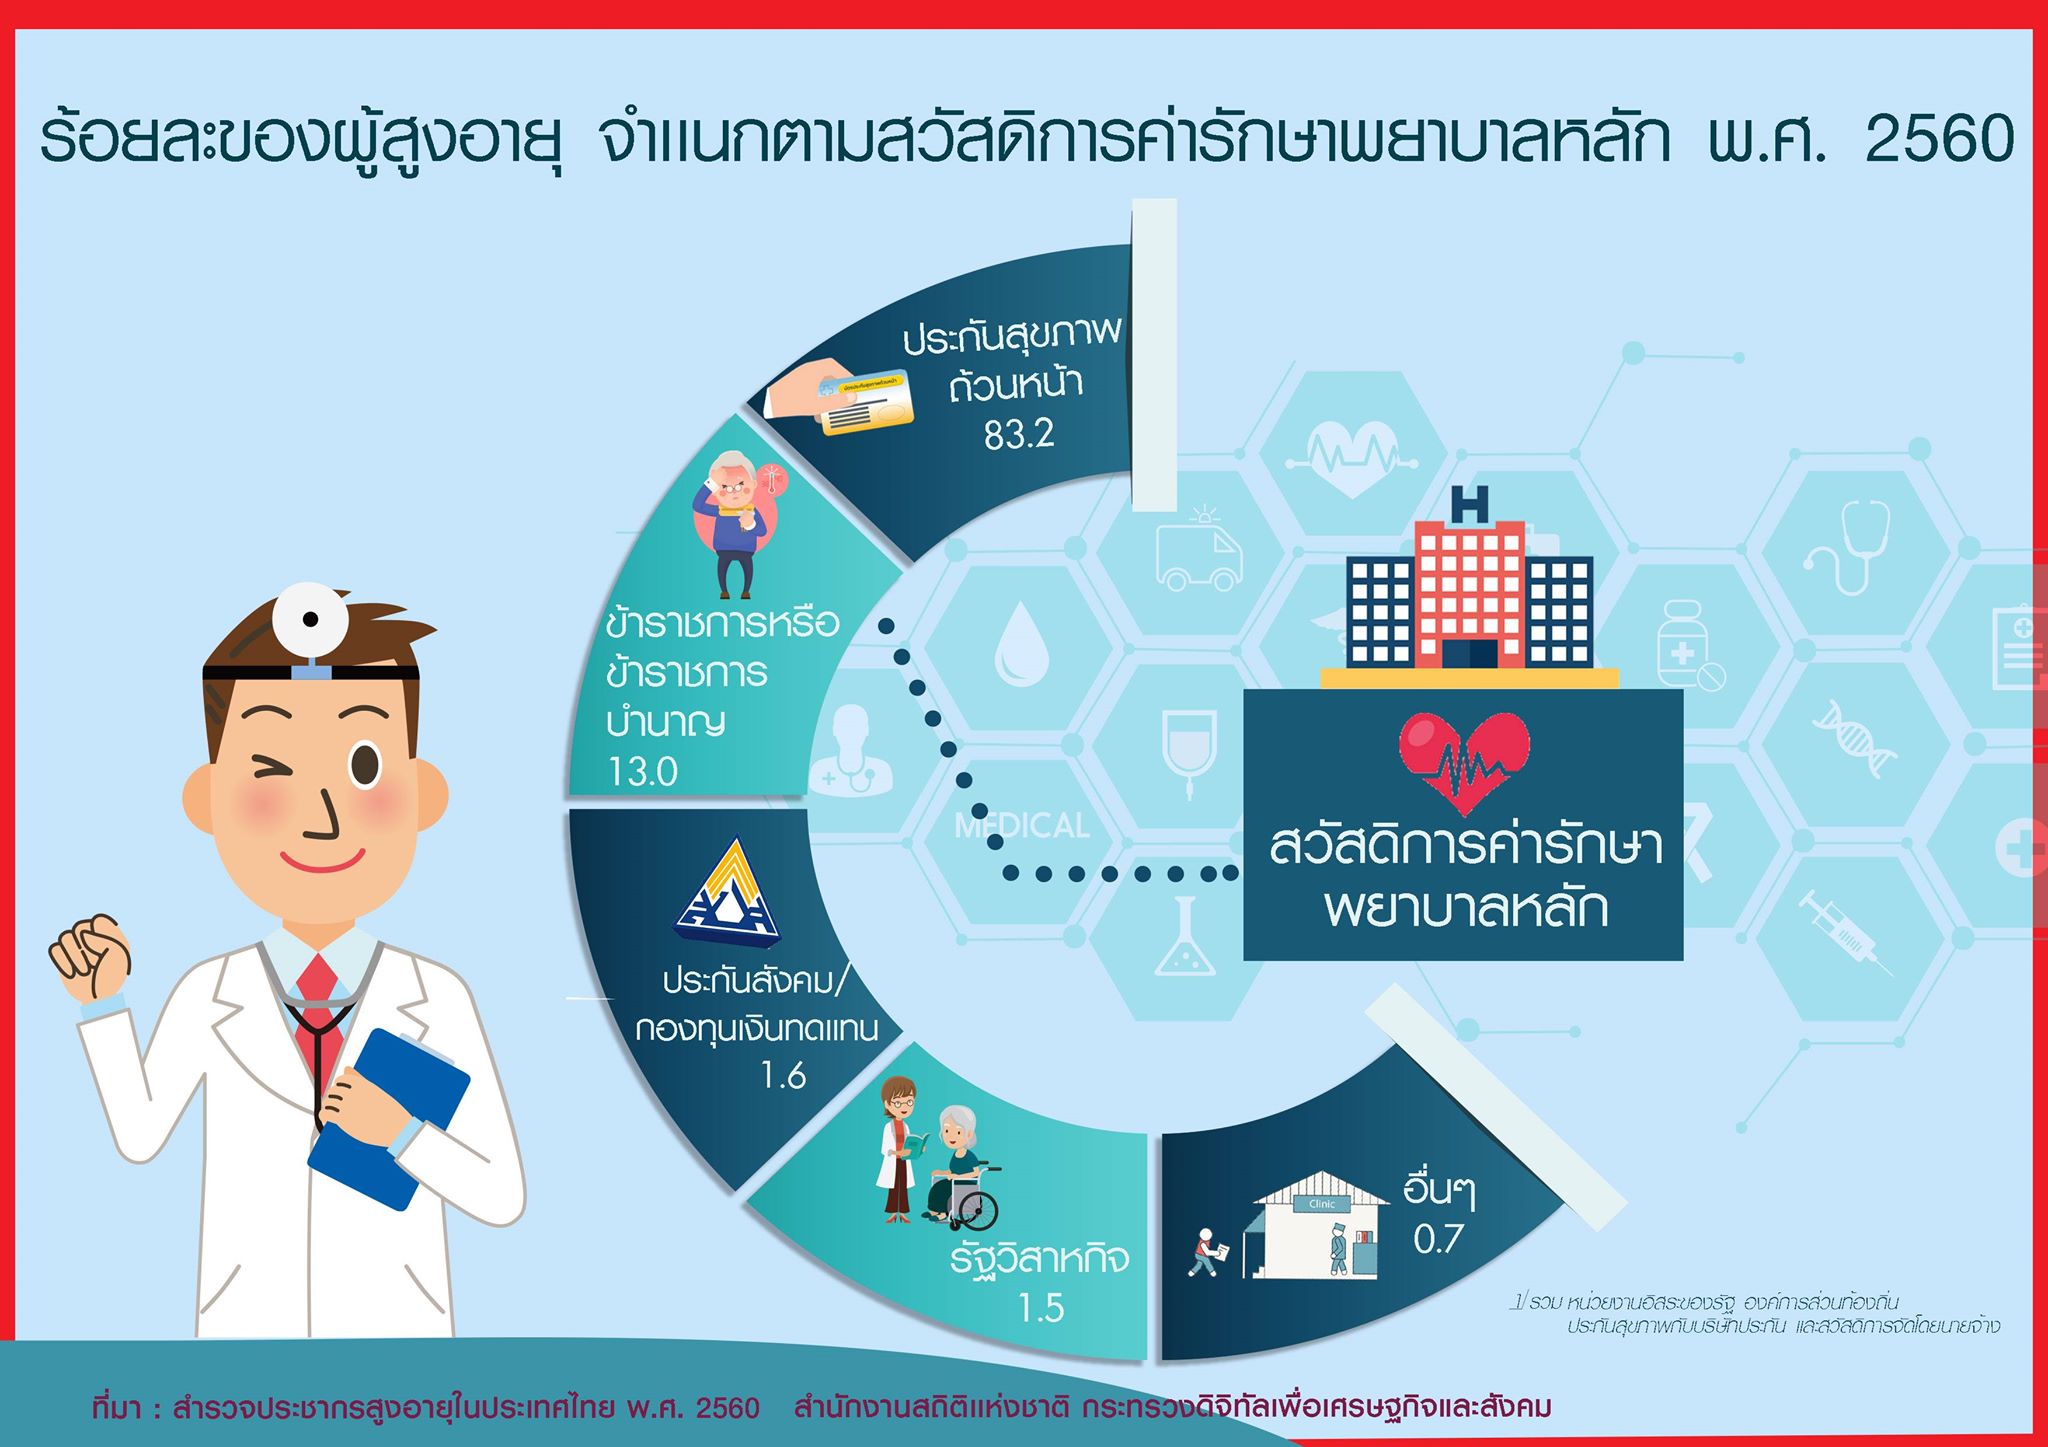 เผยผลสำรวจประชากรสูงอายุในประเทศไทย 2560